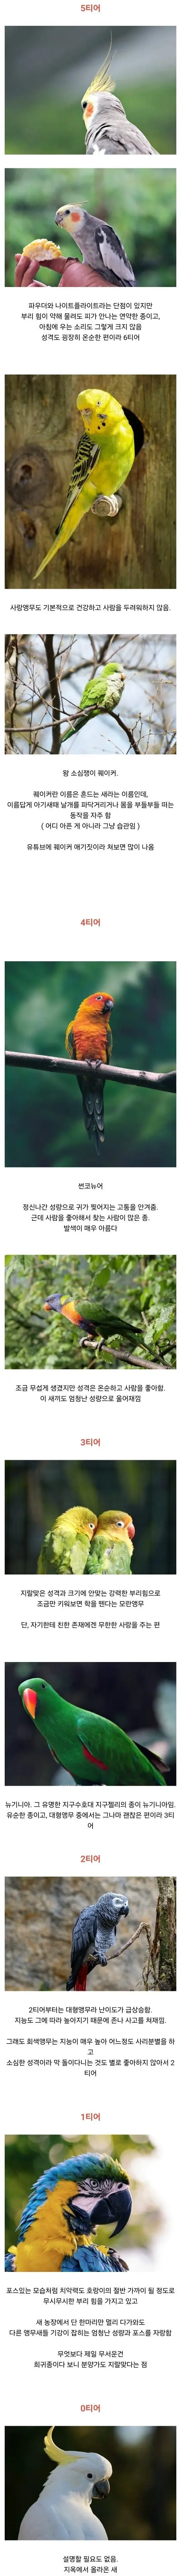 앵무새 사육 난이도 티어별.jpg | mbong.kr 엠봉